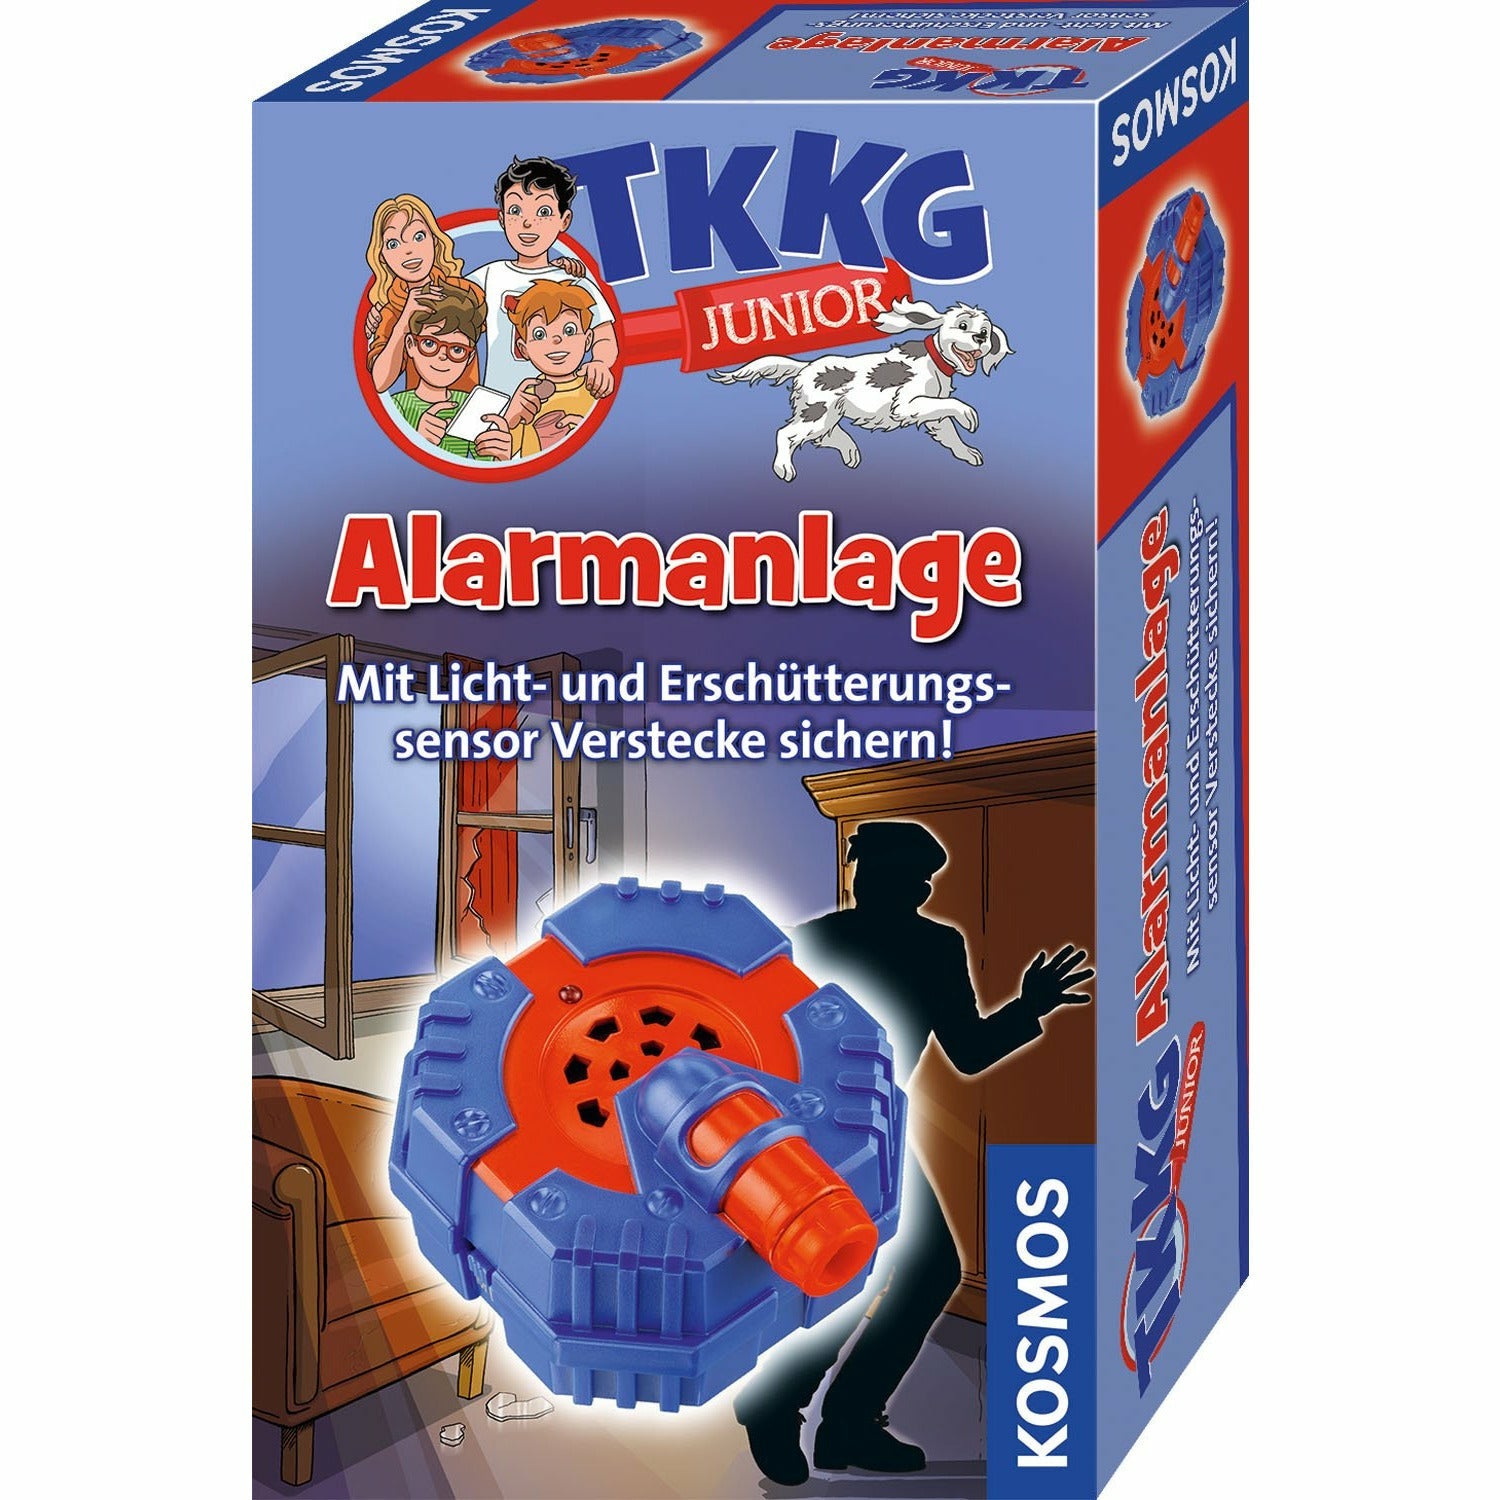 TKKG Junior Alarmanlage